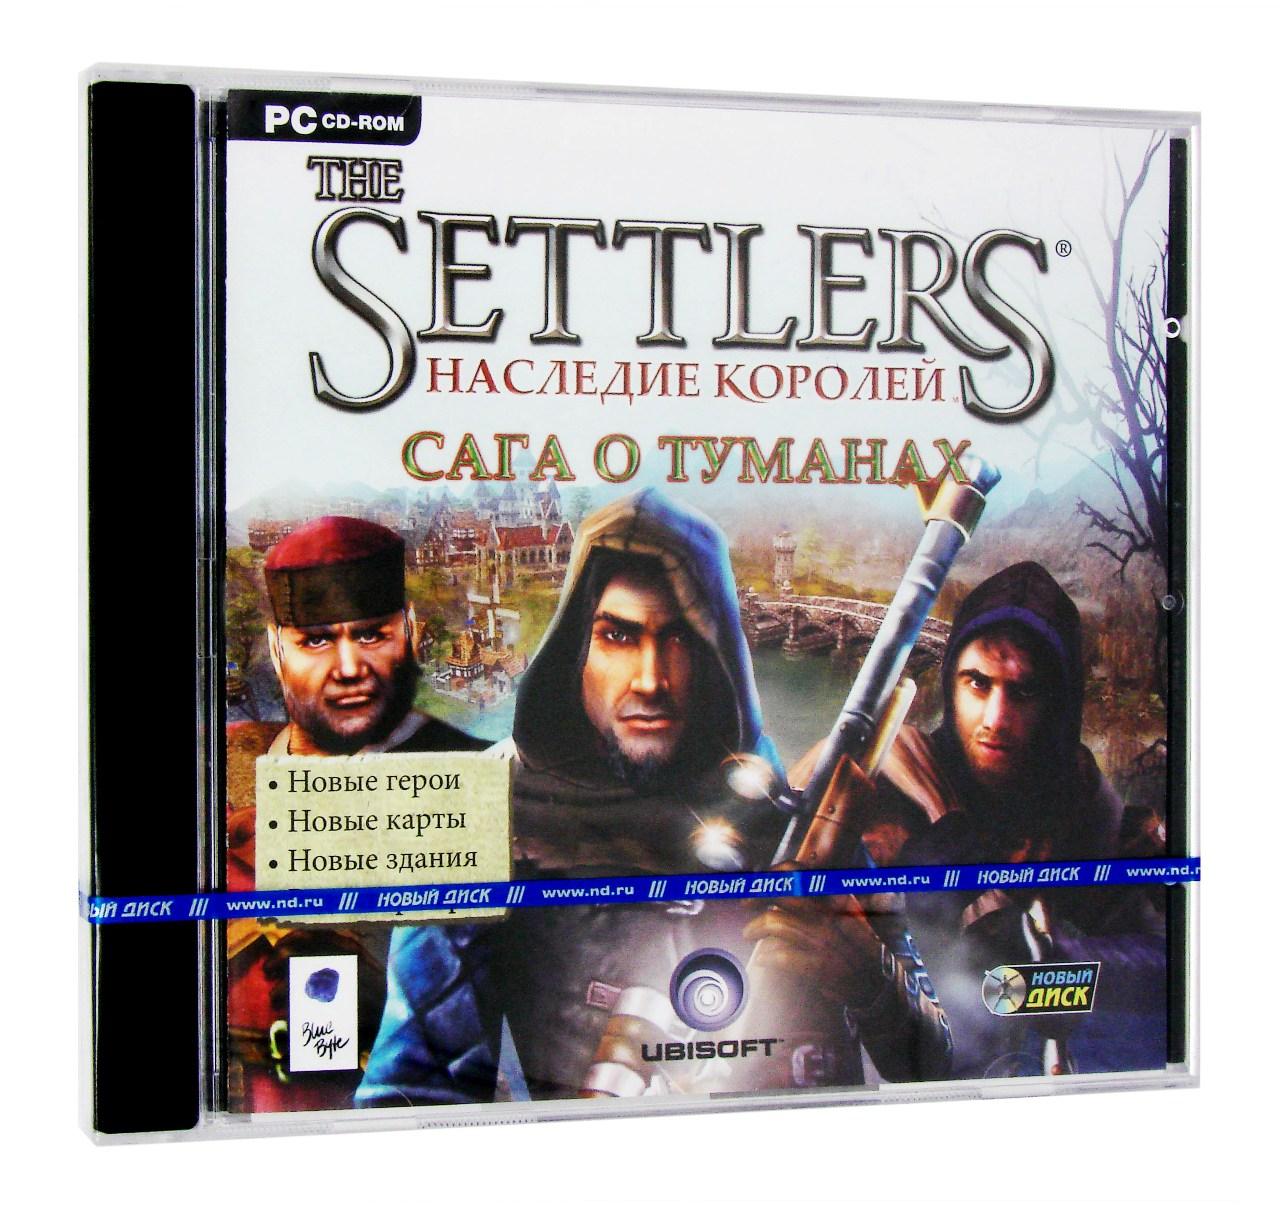 Компьютерный компакт-диск Settlers 5. Наследие королей. Сага о туманах (дополнение) (ПК), фирма "Новый диск", 1CD